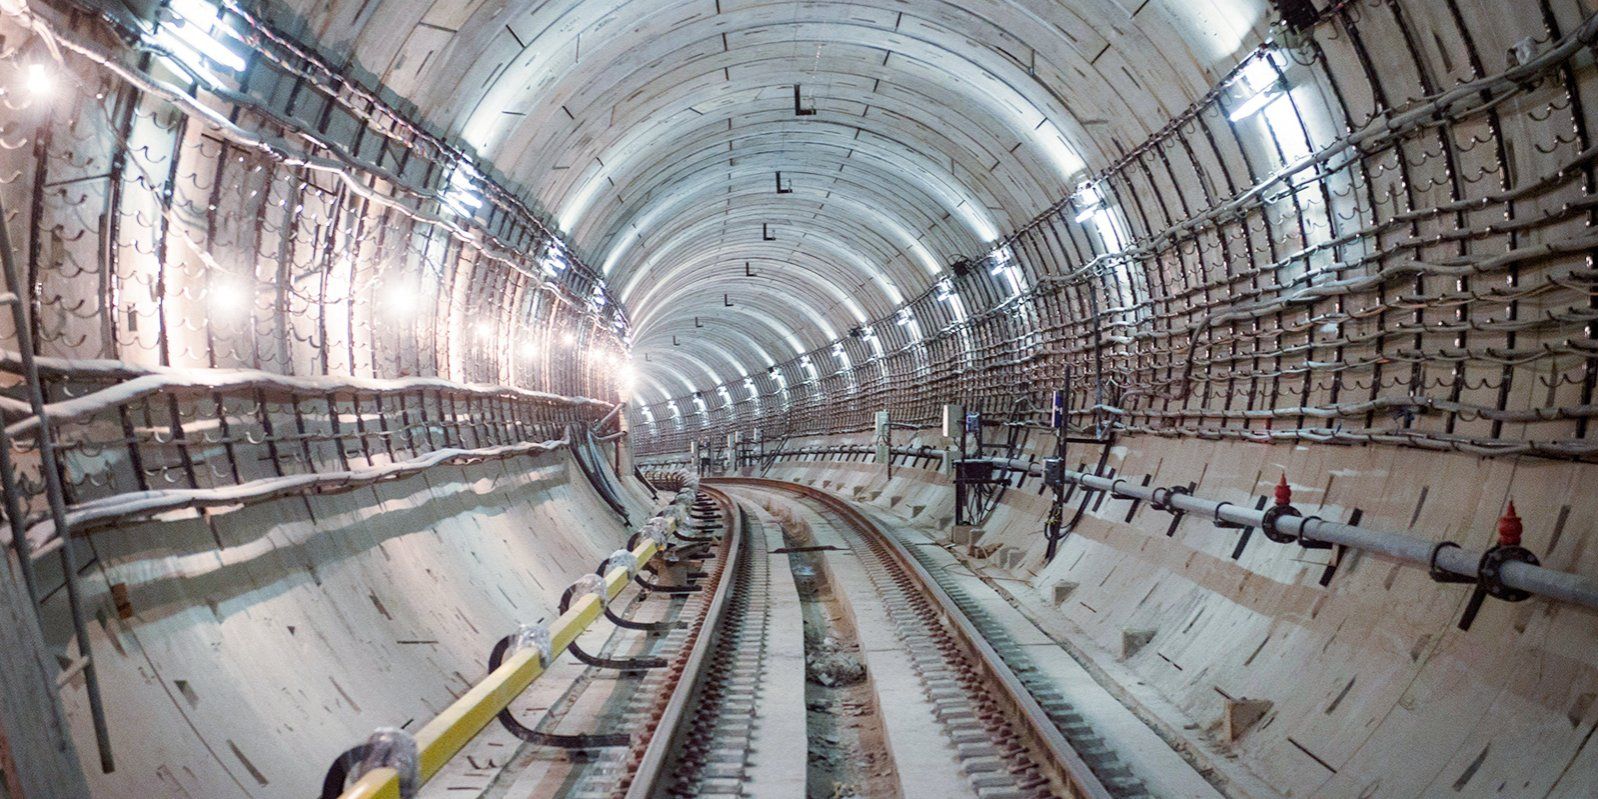 Участок Троицкой линии метро находится в высокой степени готовности